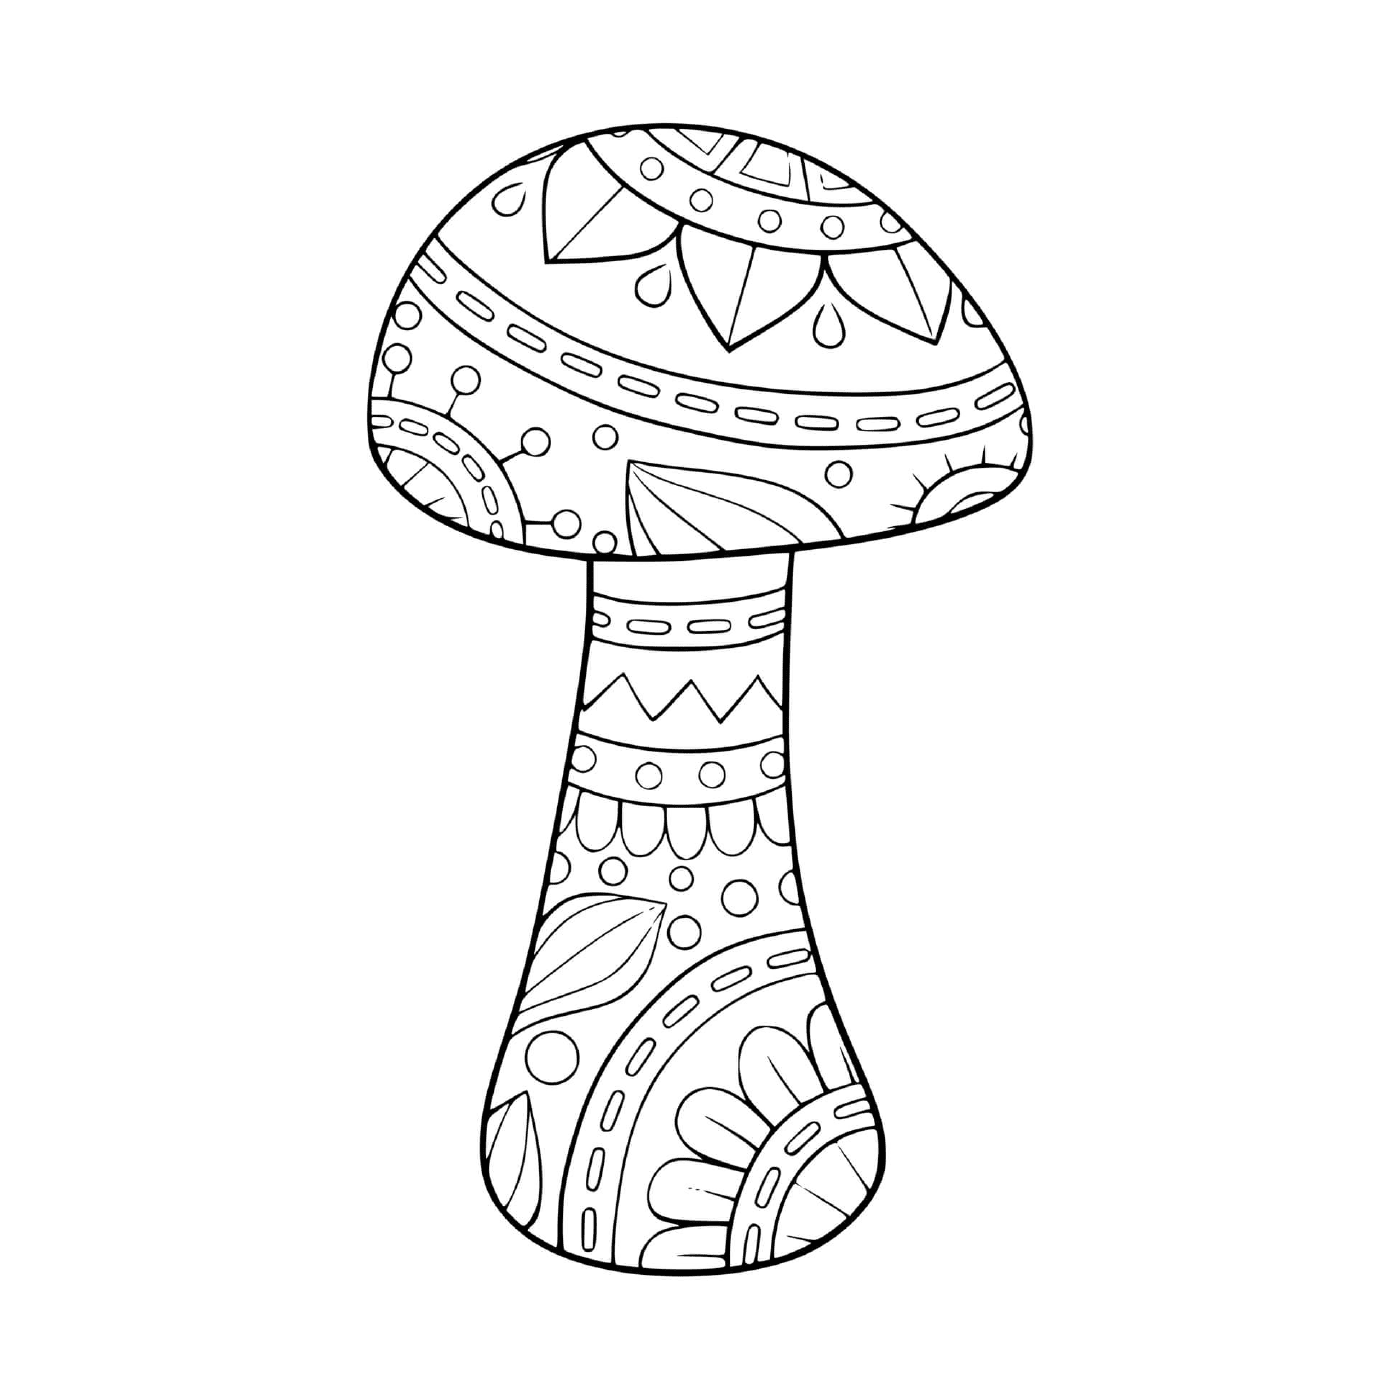  Mandala repräsentiert einen Pilz 